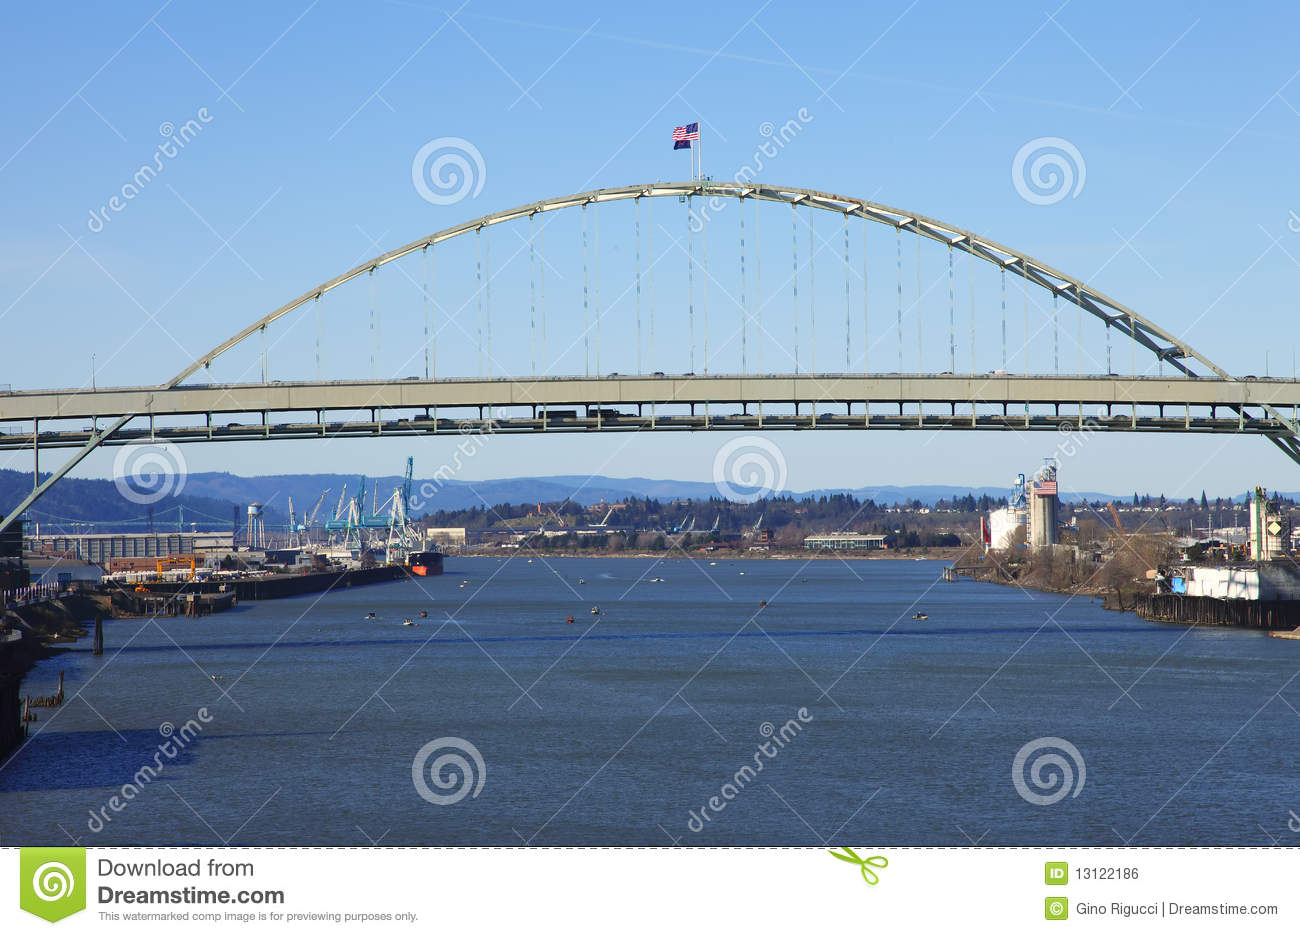 The Fremont Bridge Portland Or  Royalty Free Stock Image   Image